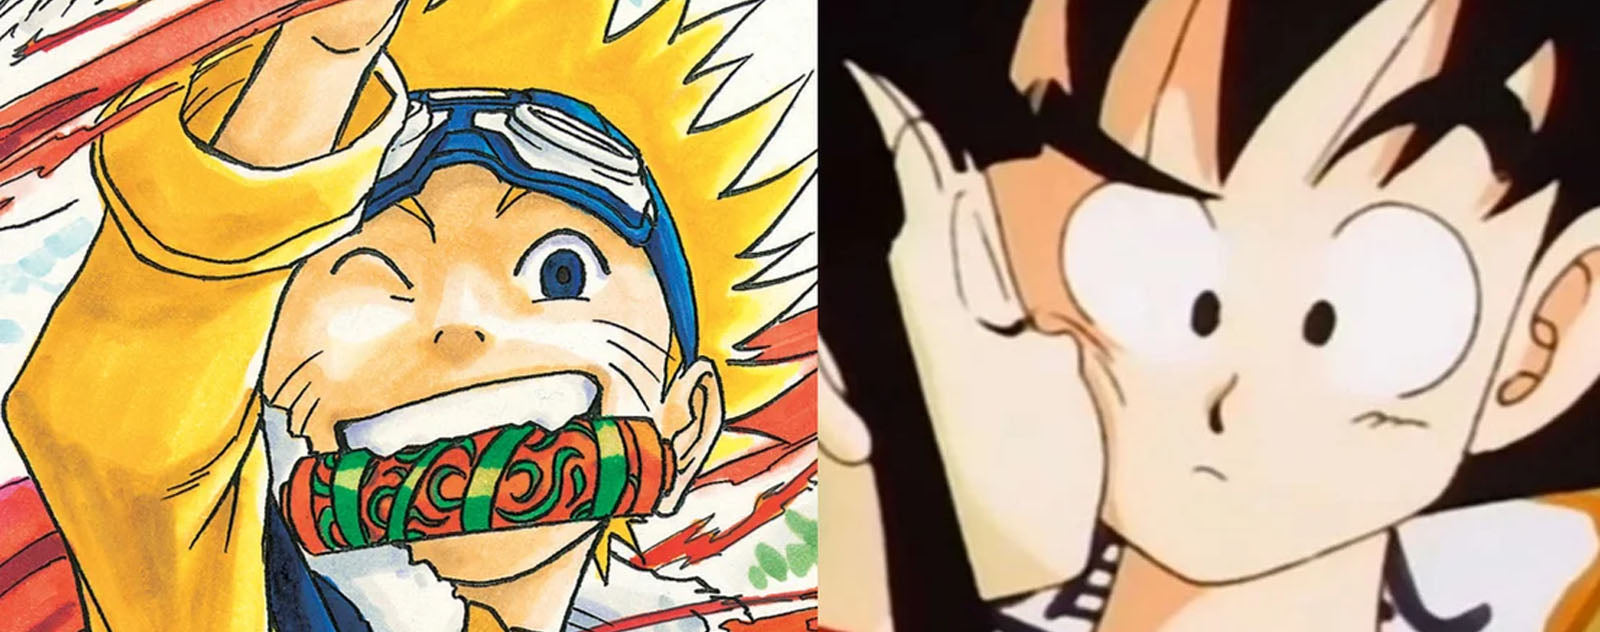 Naruto and Goku